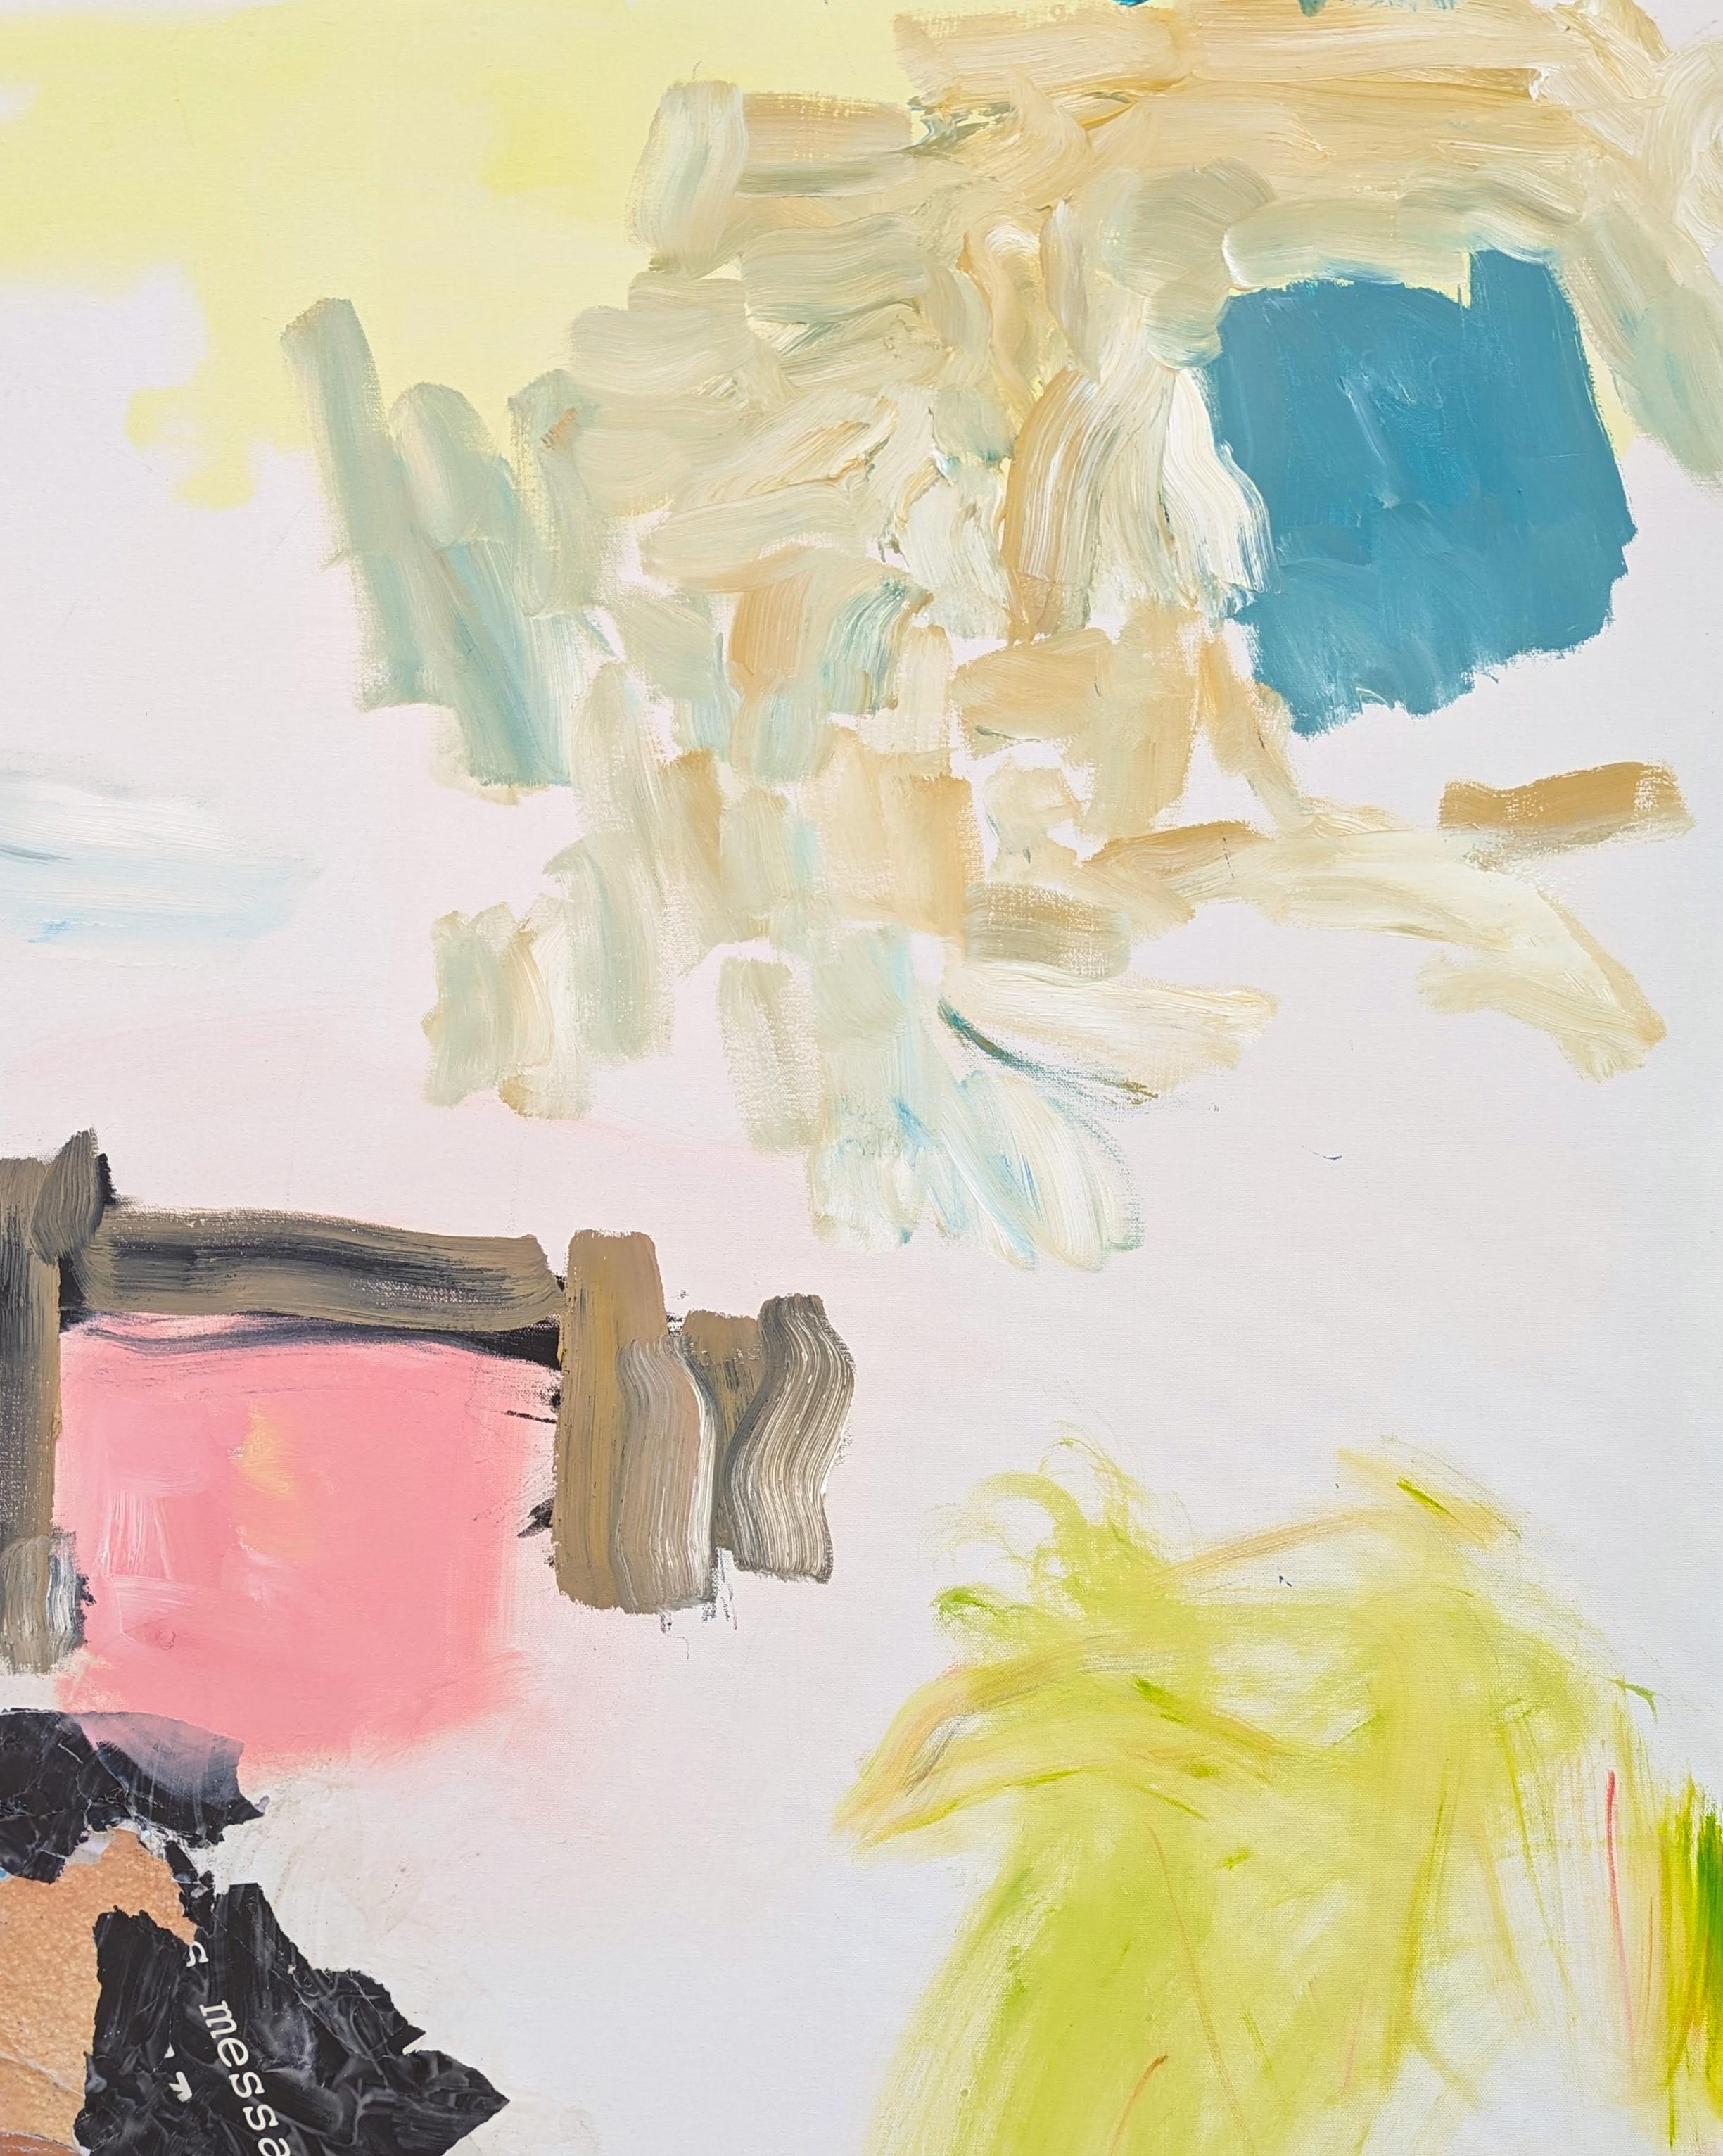 Peinture à l'huile expressionniste abstraite de l'artiste contemporain de Houston Benji Stiles. L'œuvre présente des marques gestuelles en rose, jaune et bleu pastel sur un fond blanc cassé. Actuellement non encadré, mais des options sont